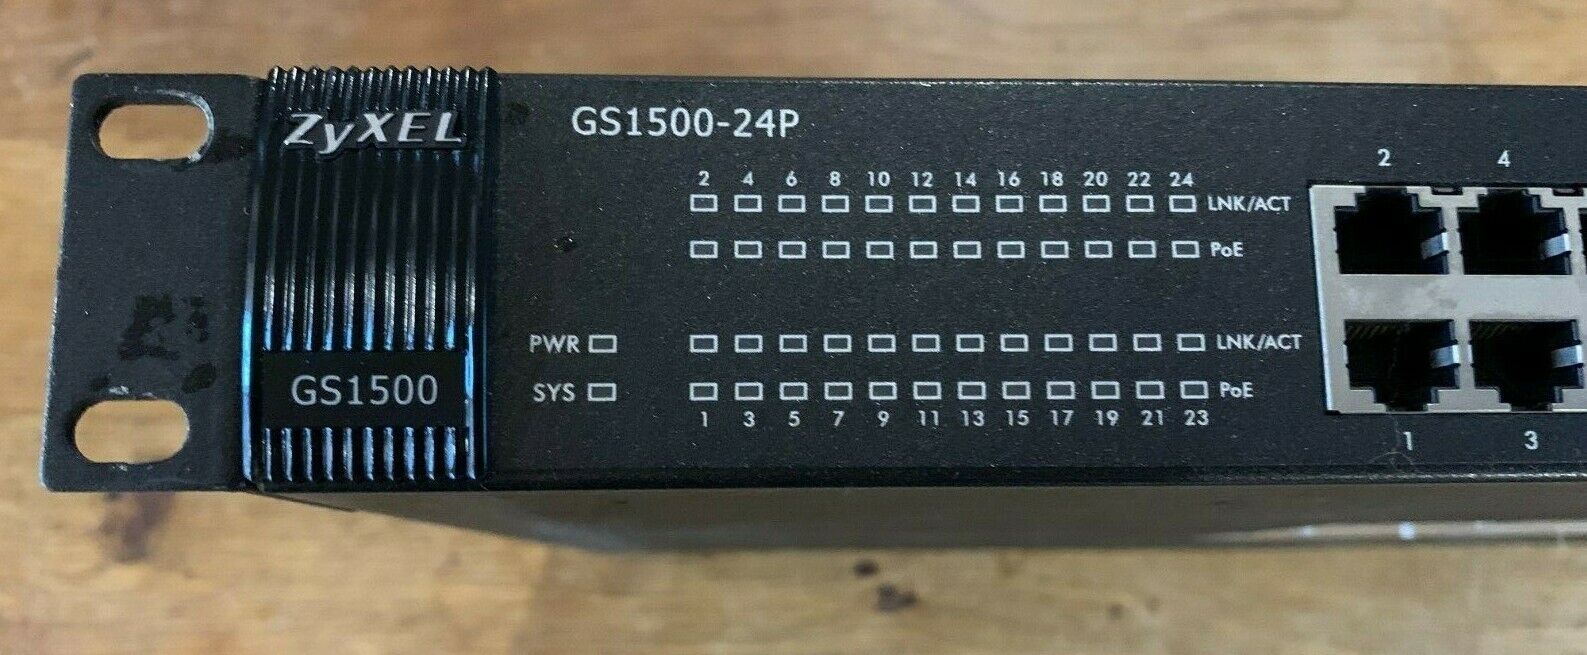 Zyxel GS1500-24P 24 port managed gigabit POE switch with 4x uplink/SFP ports Oryginalne, wybuchowe kupowanie